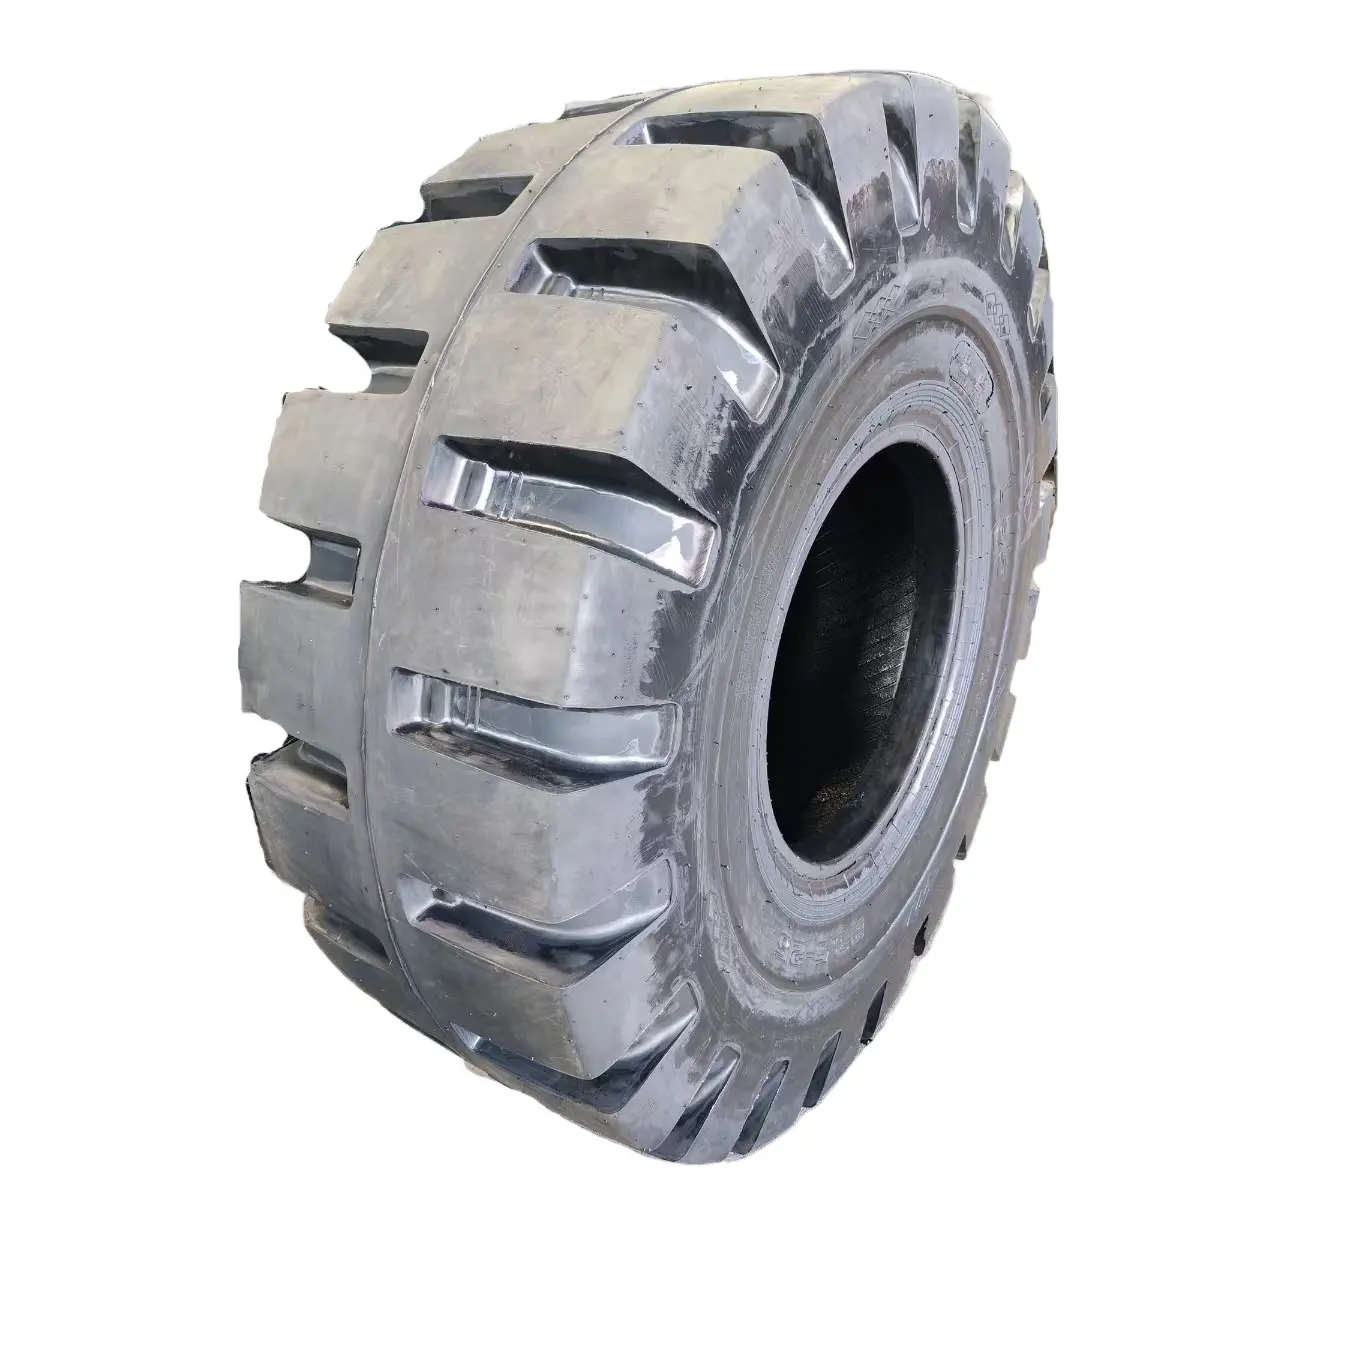 Sconto 23.5-25 modelli di pneumatici per macchinari pesanti adatti per terreni off-highway adatti a tutta la stagione